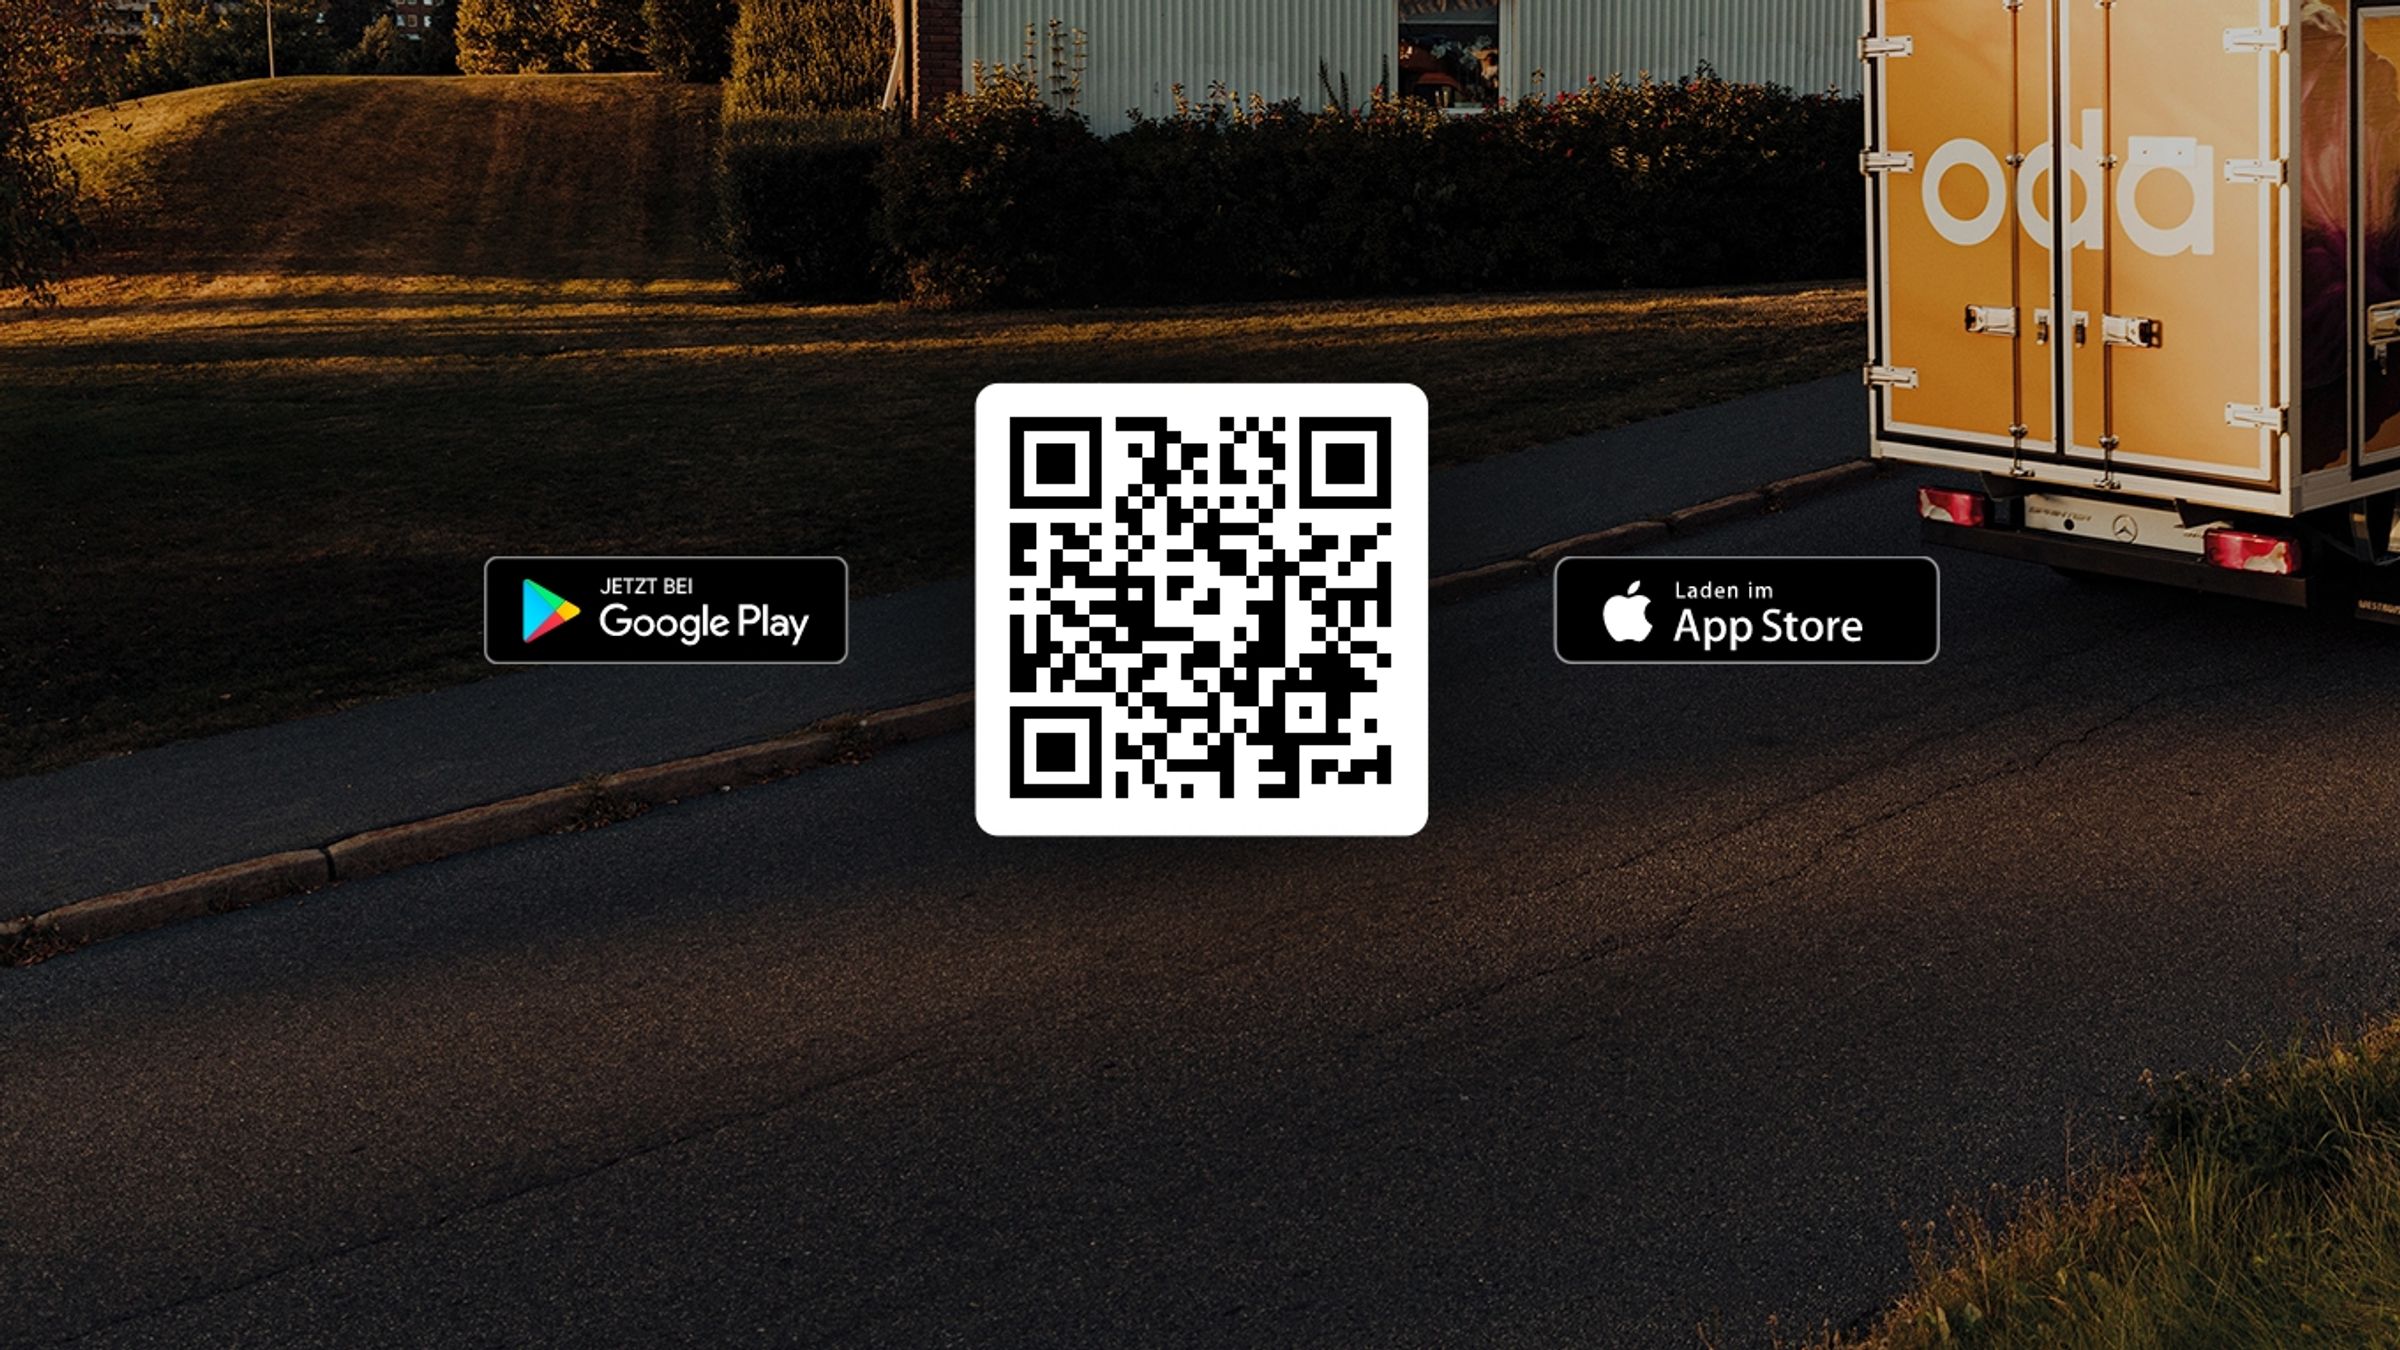 Das App-Store-Badge und das Google-Playstore-Badge sowie ein QR-Code zum App Download sind auf einem Bild mit dem Oda-Van abgebildet.